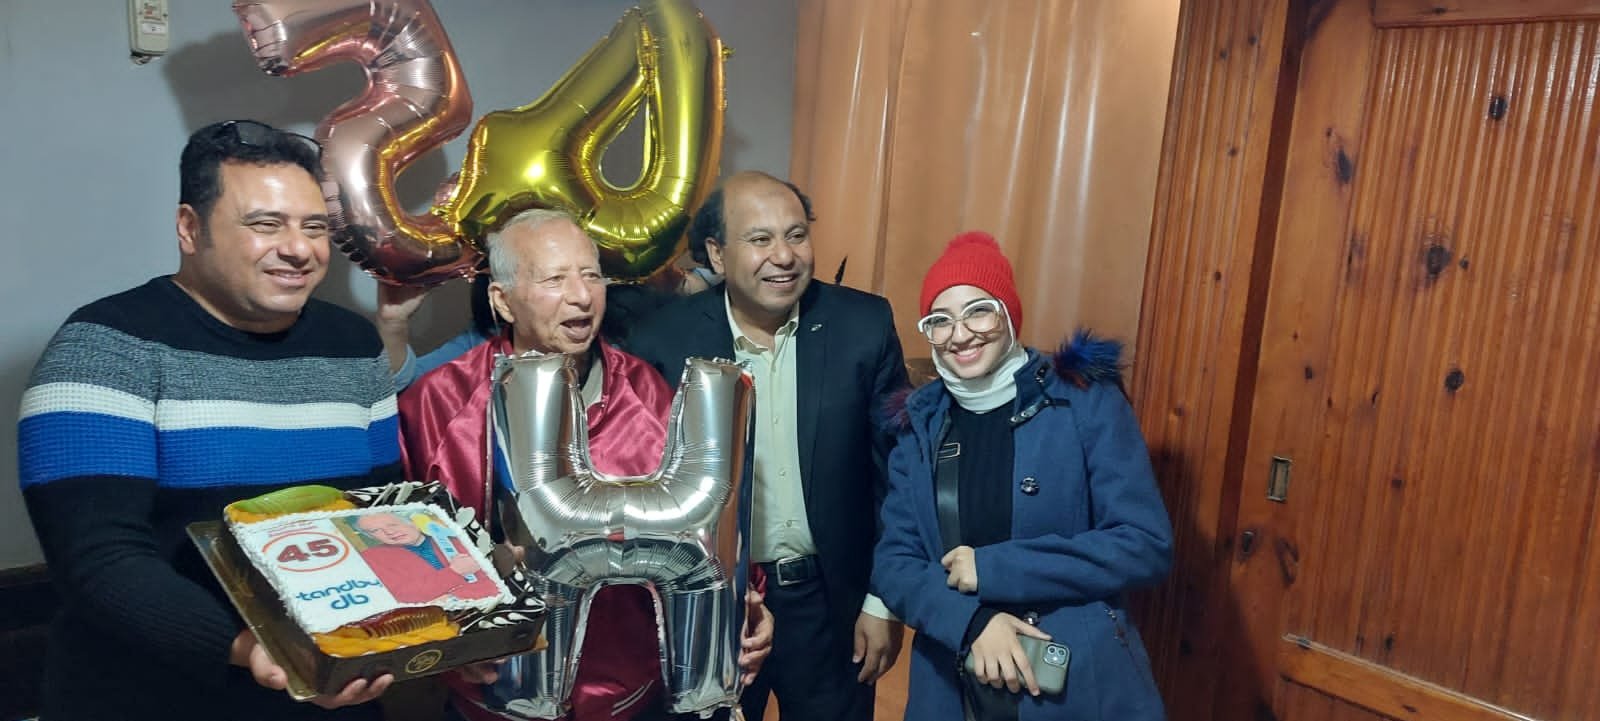 فرقة المصريين تحتفل بعيدها ال 45 بطريقة مختلفة " ستاند باى"